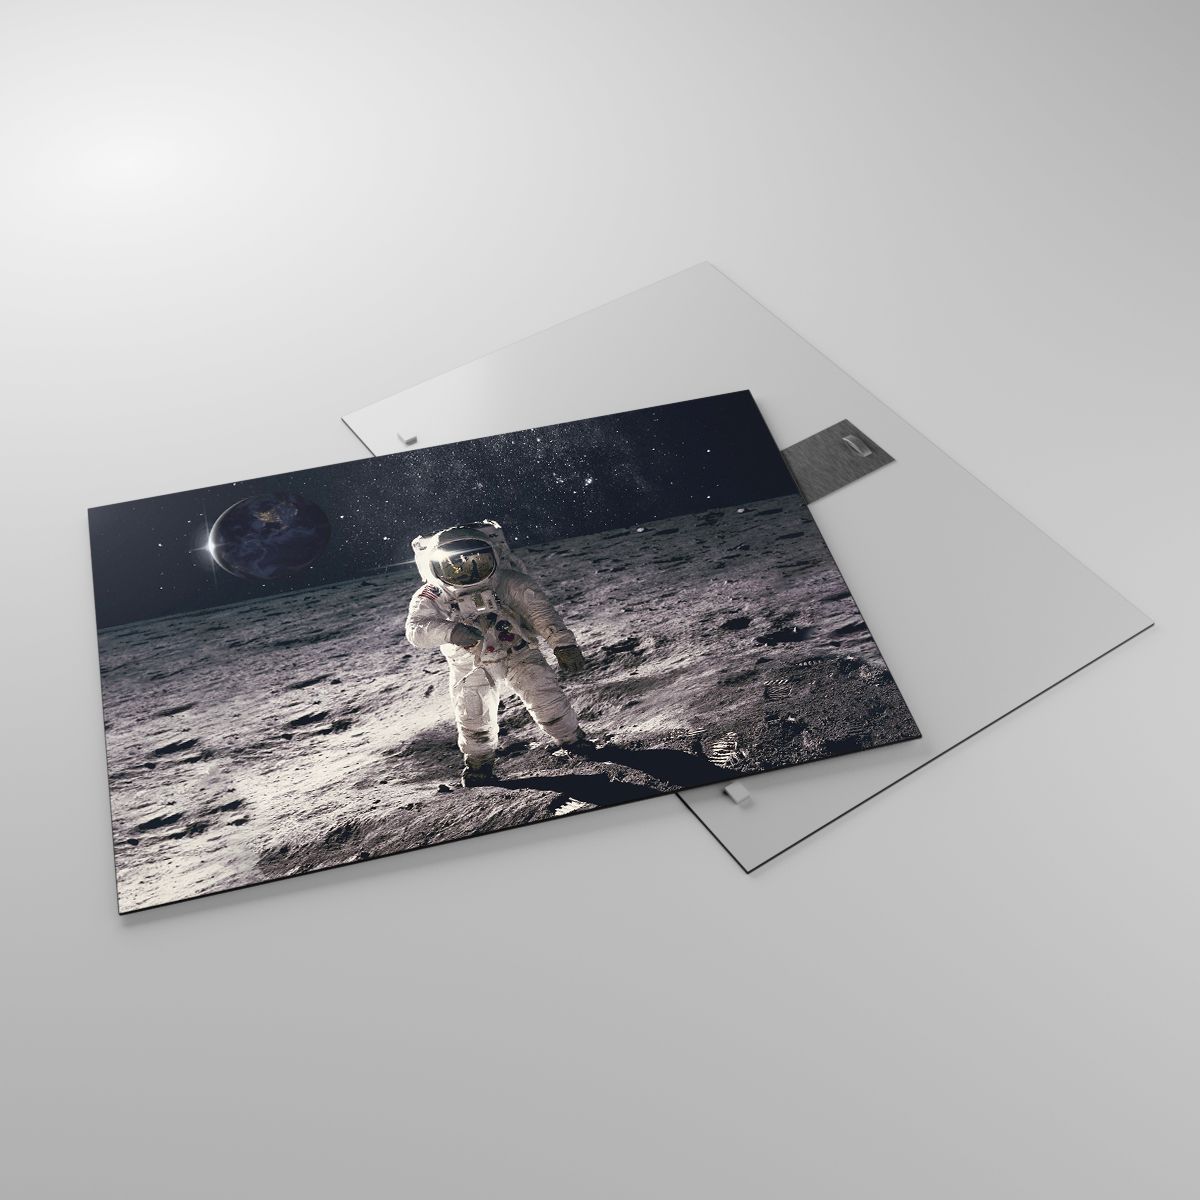 Glasbild Abstraktion, Glasbild Mann Im Mond, Glasbild Astronaut, Glasbild Kosmos, Glasbild Mond